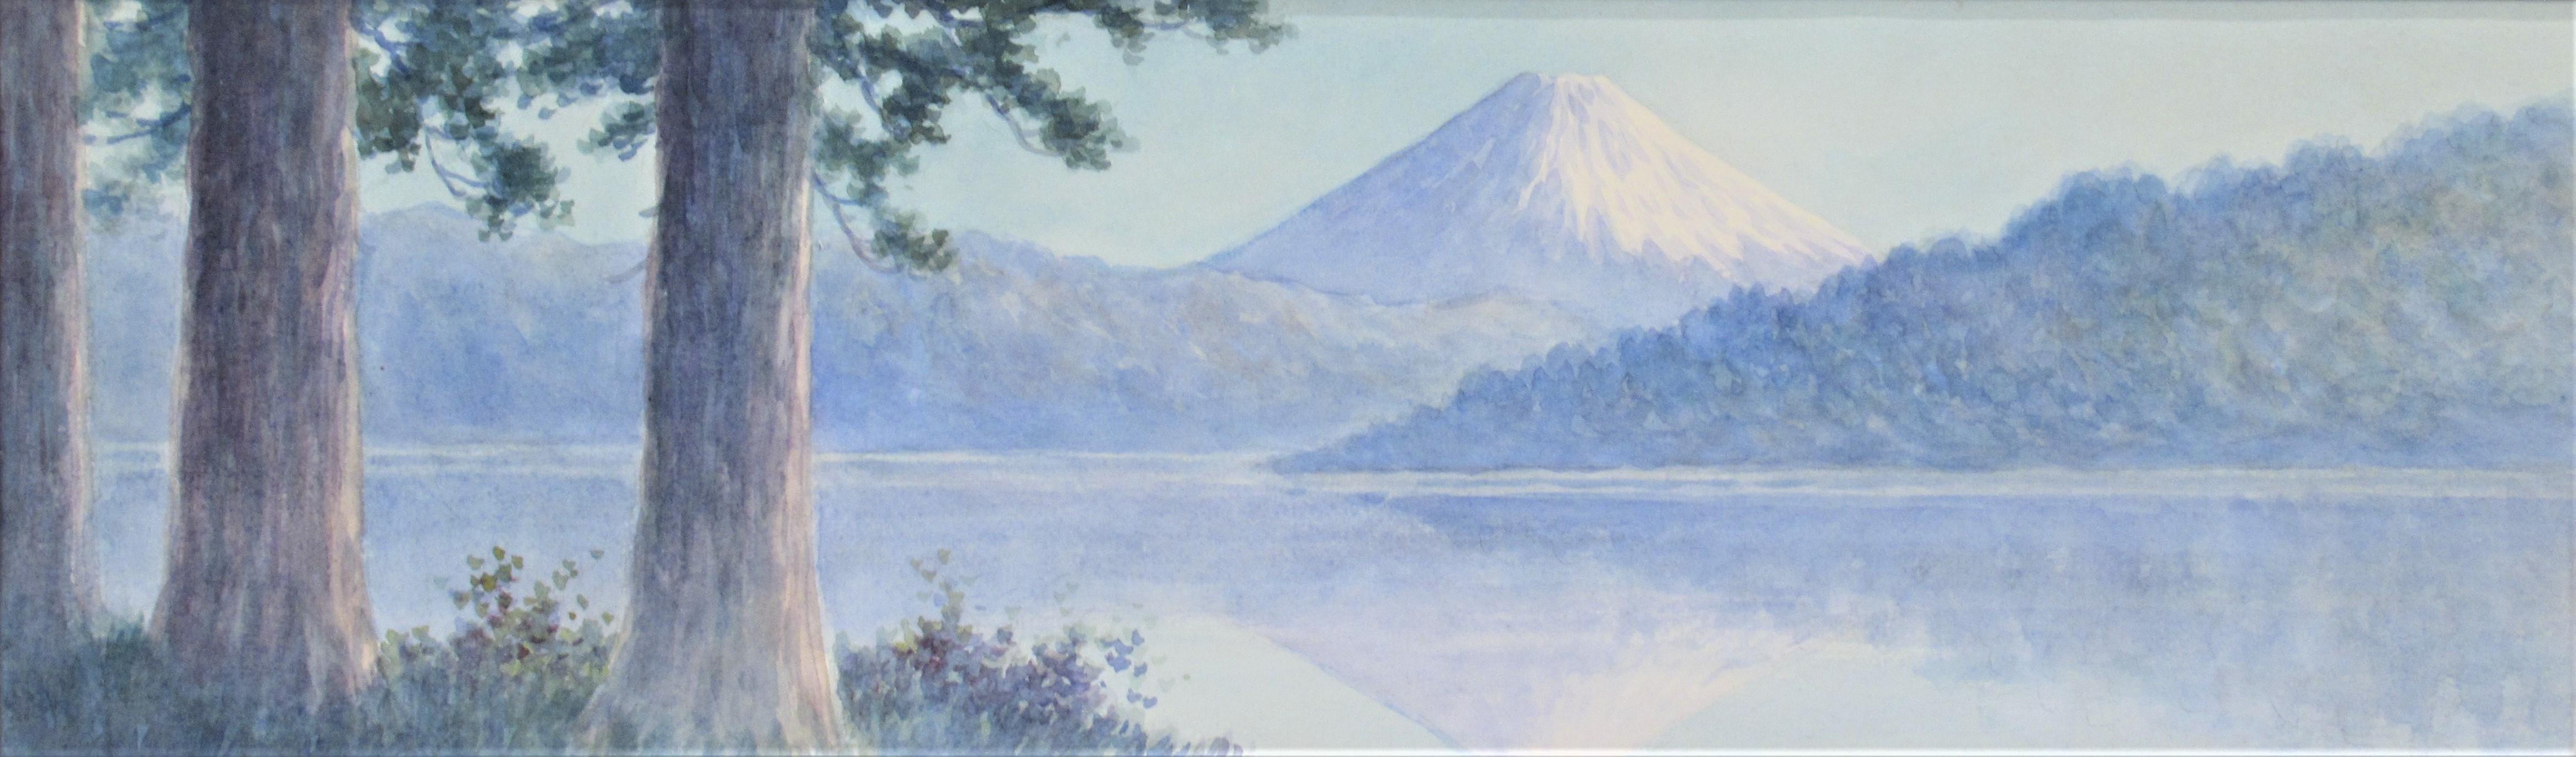 Mount Fuji, Japan - Art by Tokusaburo Kobayashi